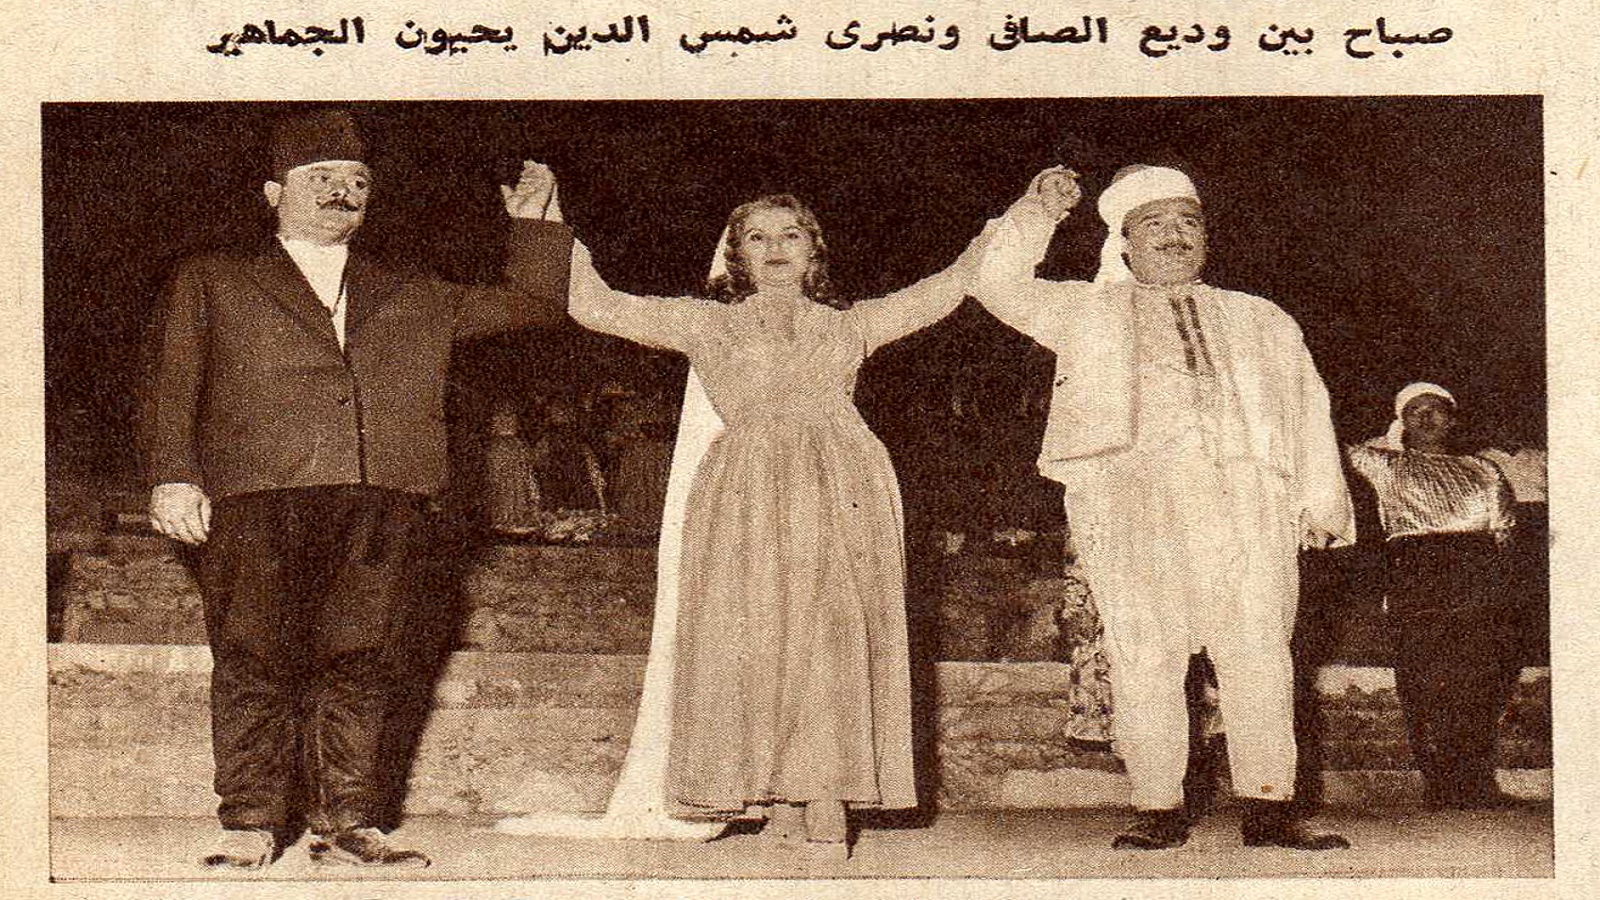 صباح بين وديع الصافي ونصري شمس الدين في "موسم العز"، 1960.